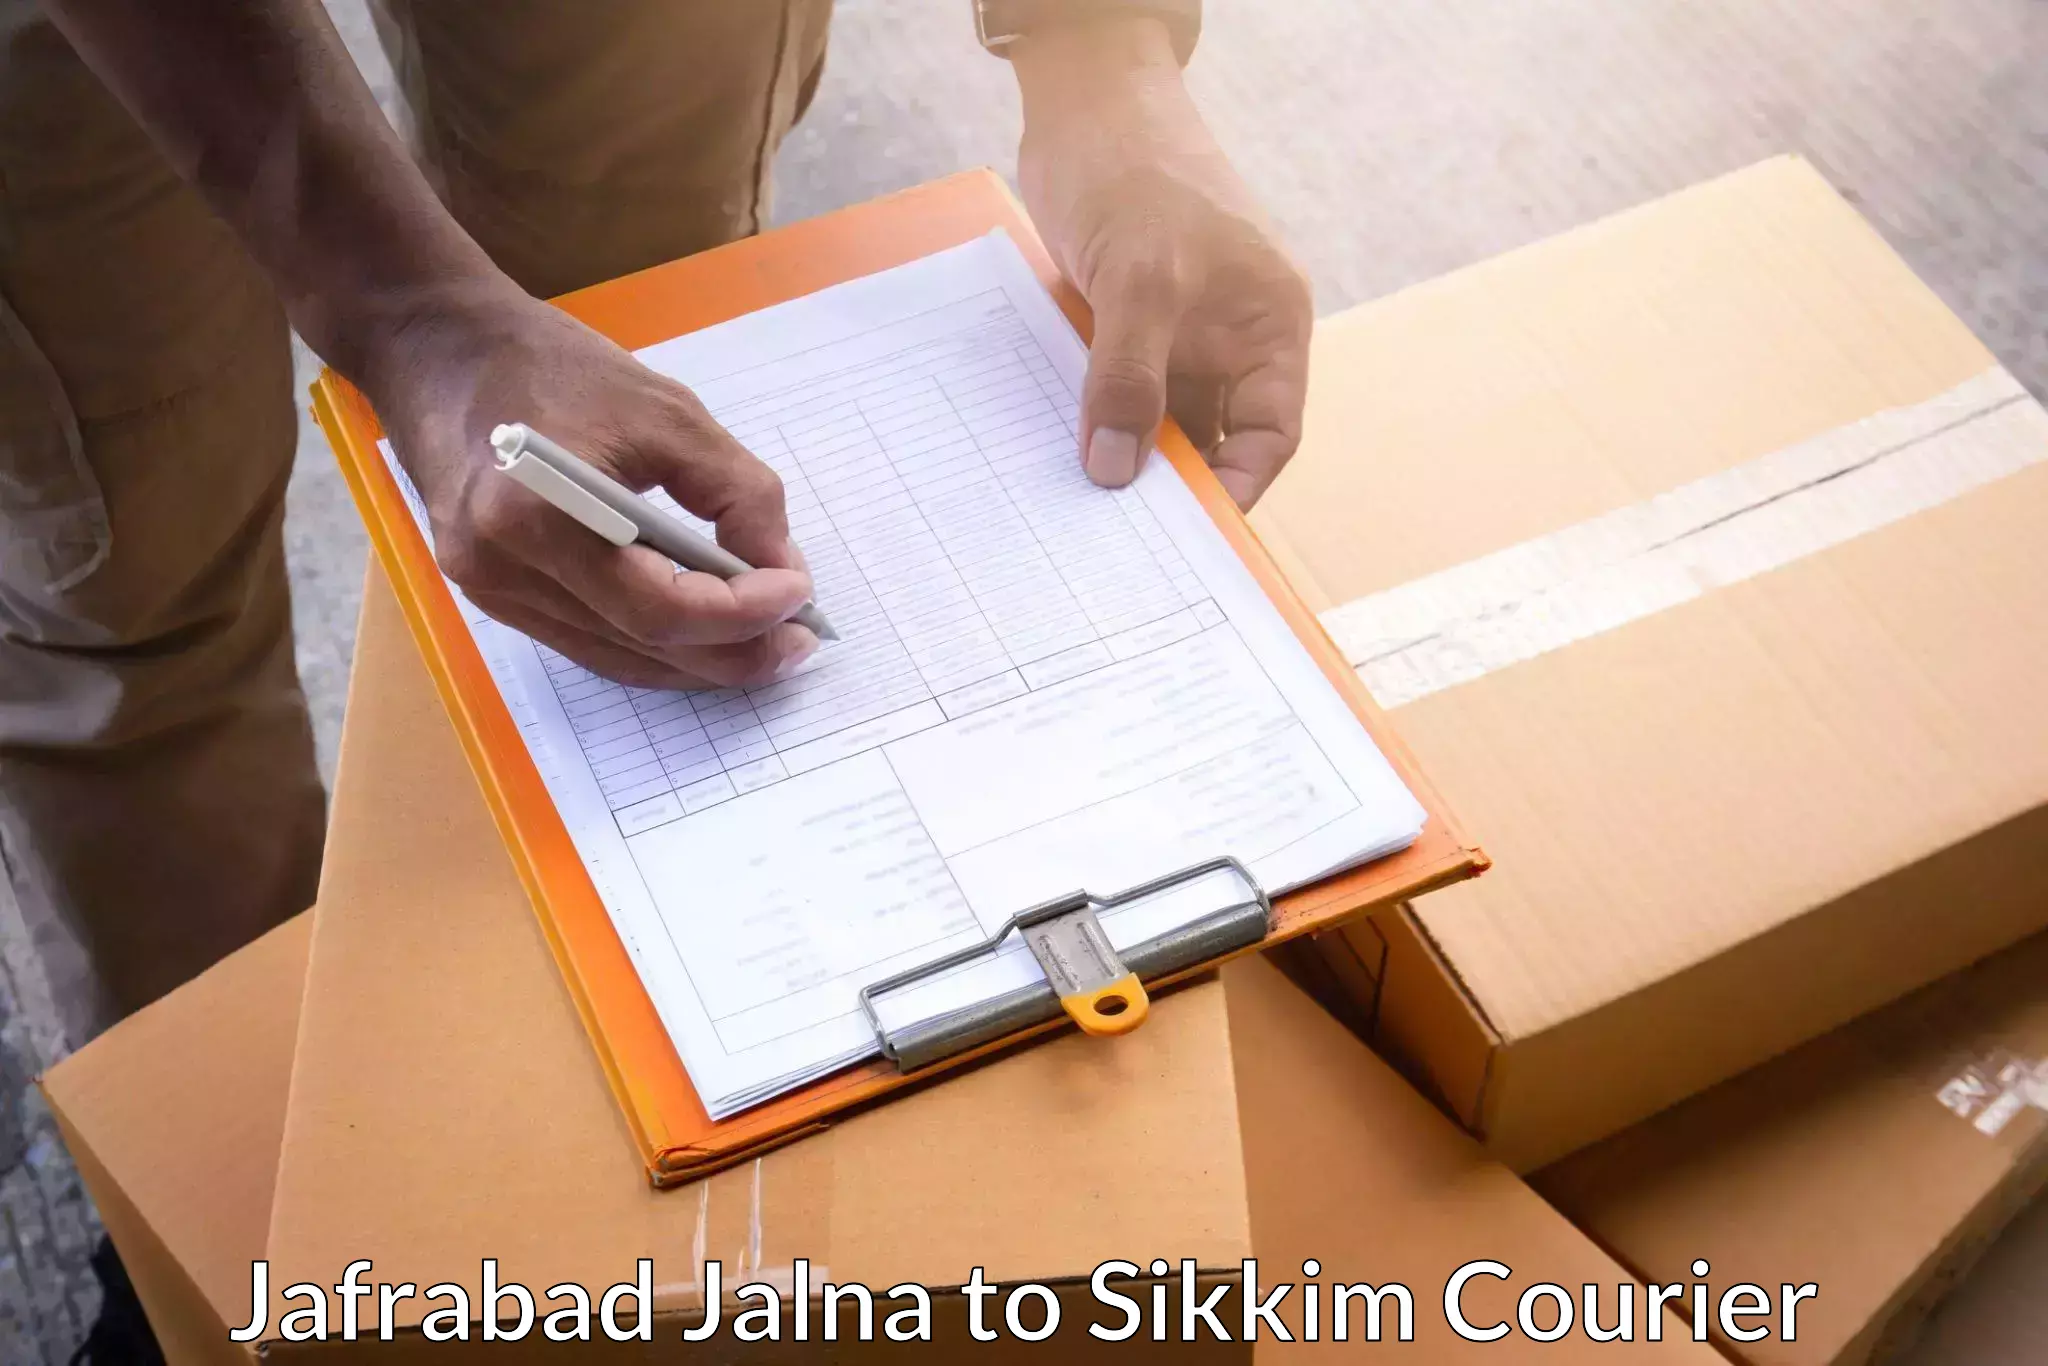 Efficient cargo handling Jafrabad Jalna to Namchi